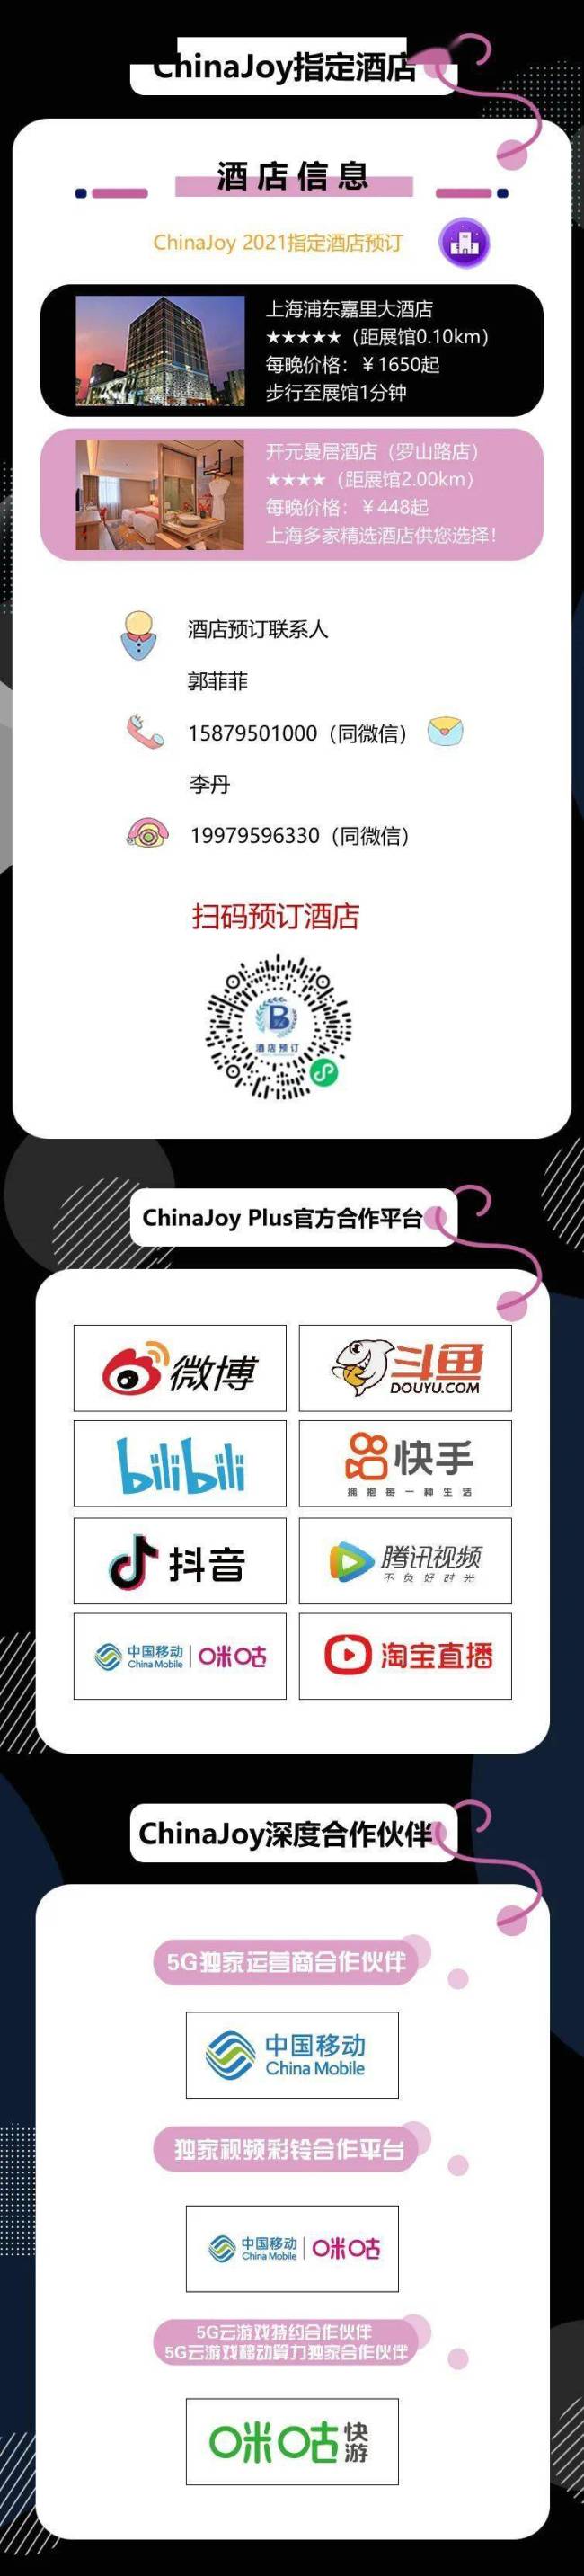 2021年第十九届ChinaJoy展前预览展览活动篇发布！